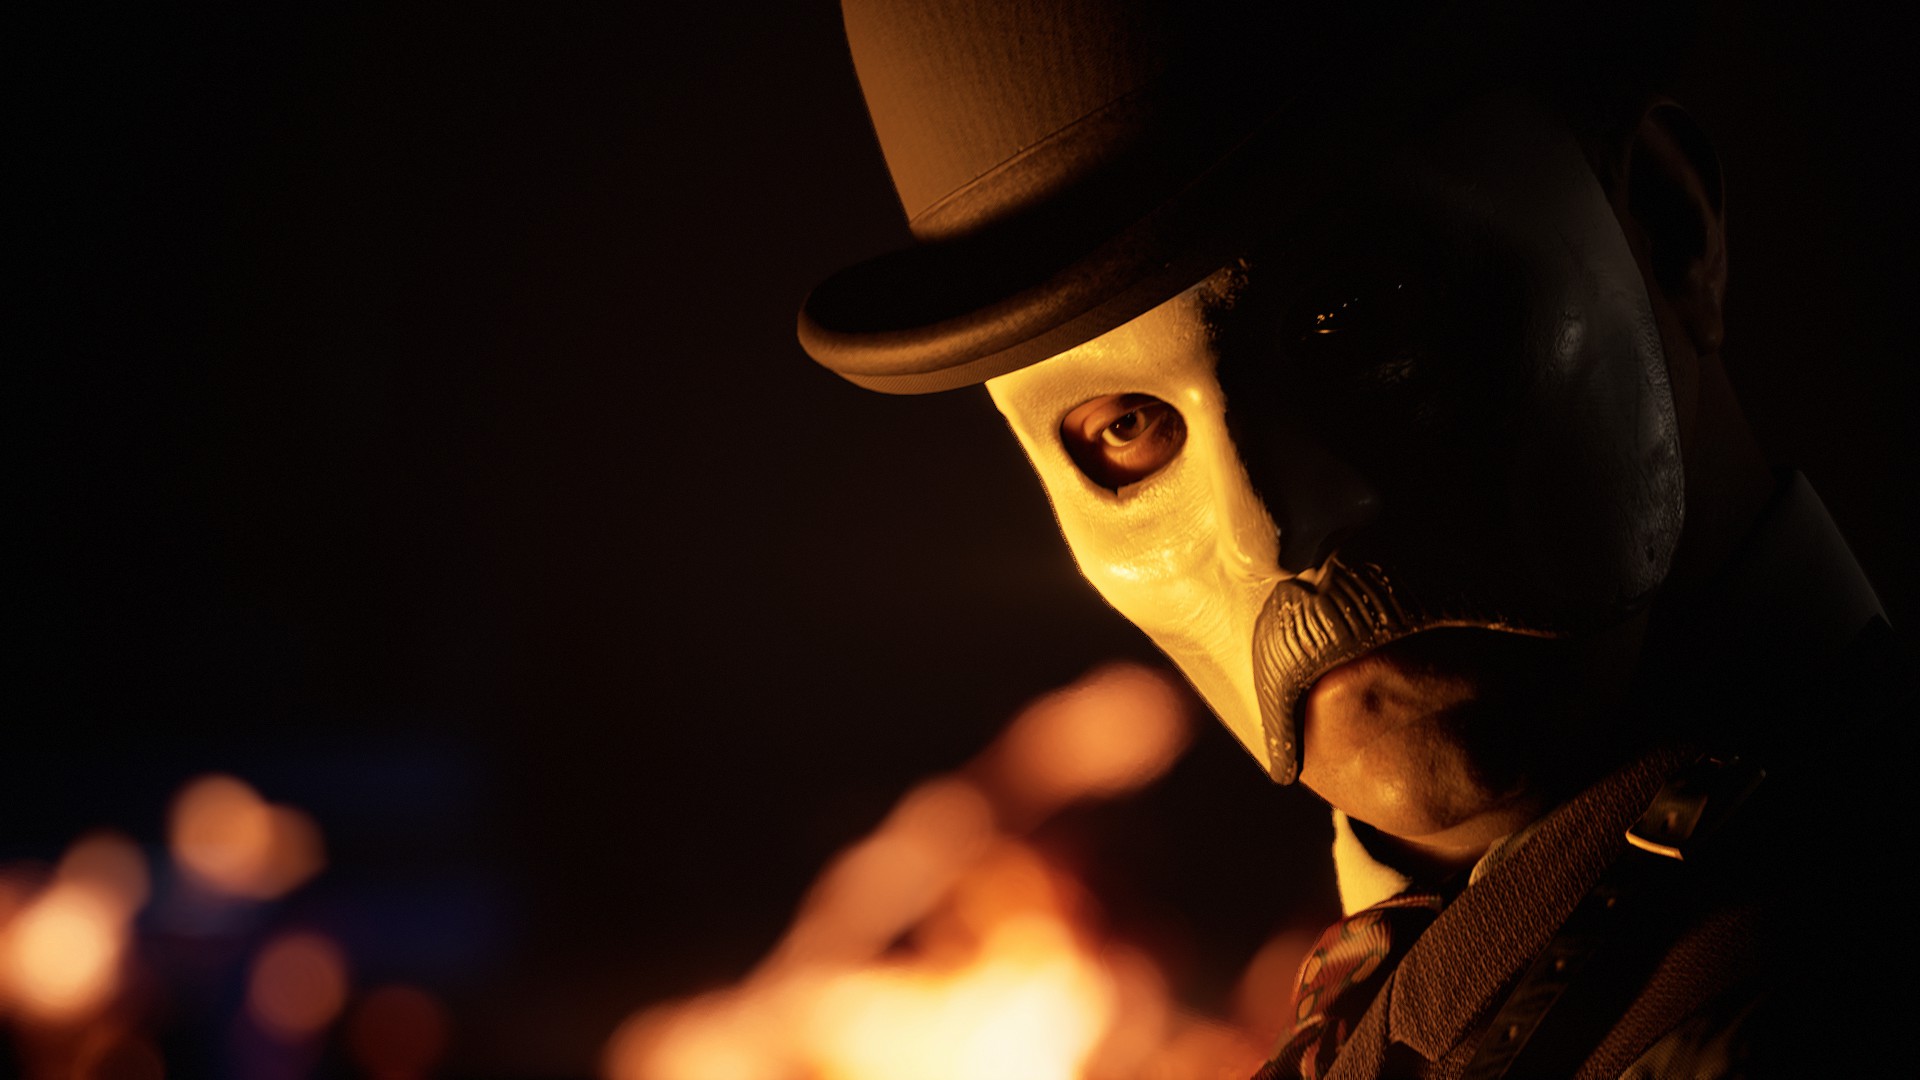 Mr. Du'Met in H H Holmes mask